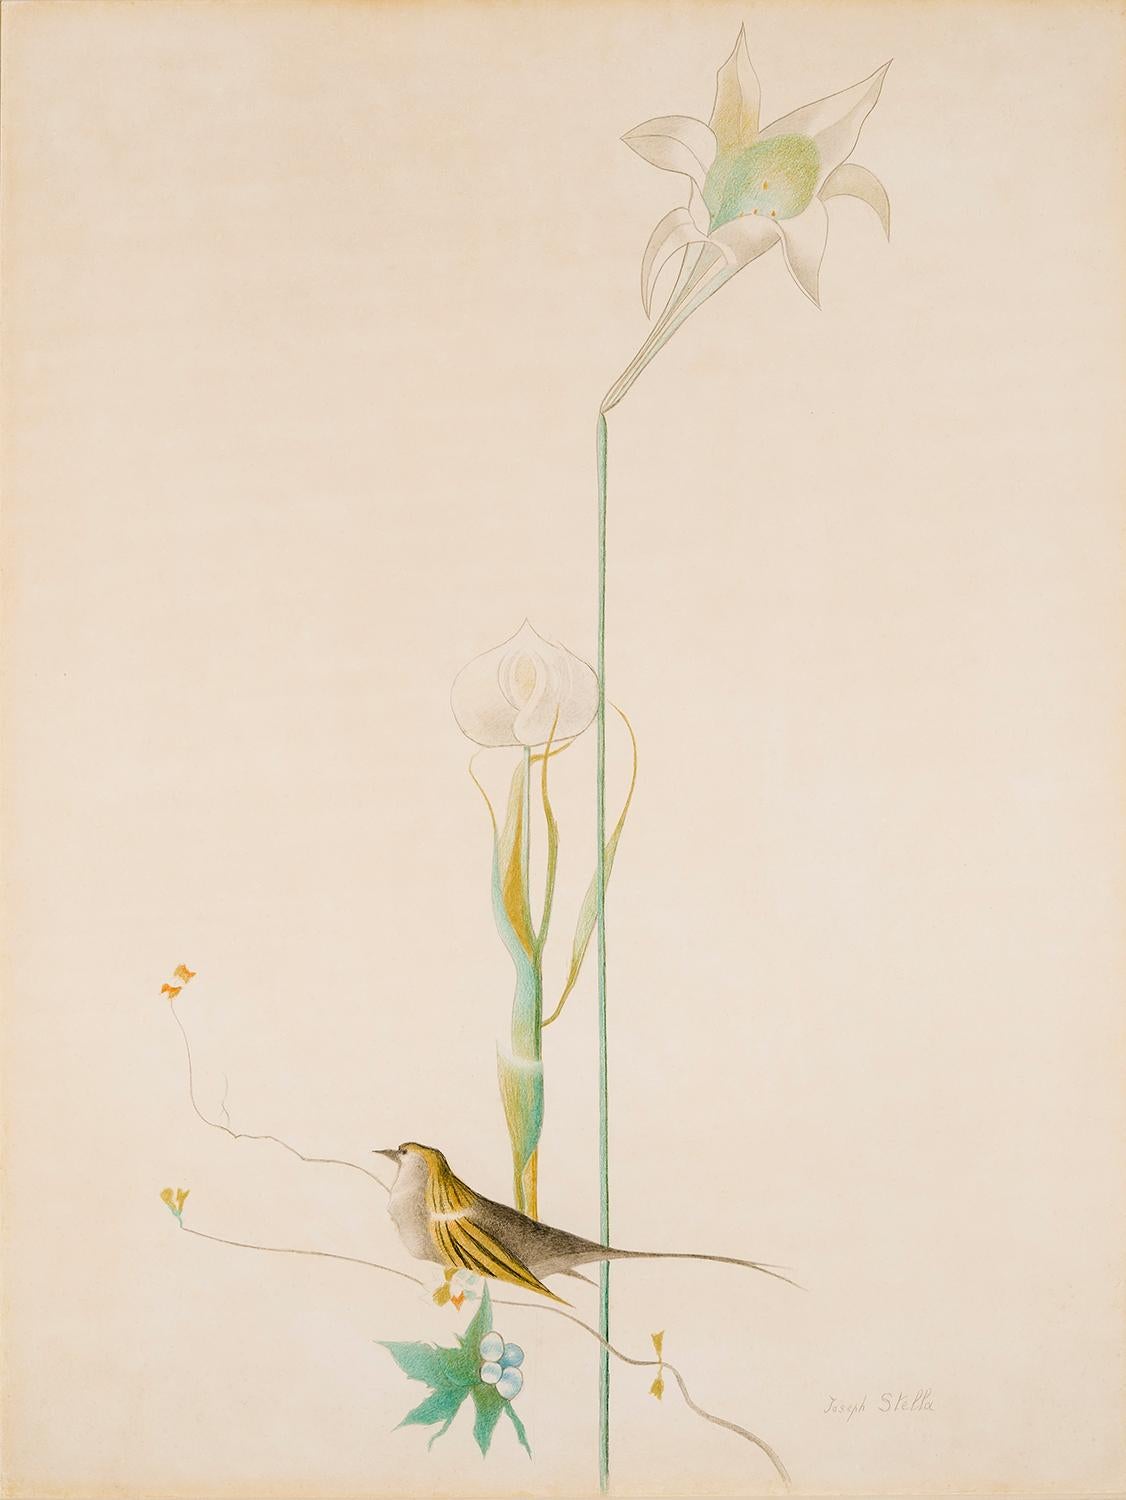 Animal Art Joseph Stella - Libellule et oiseau